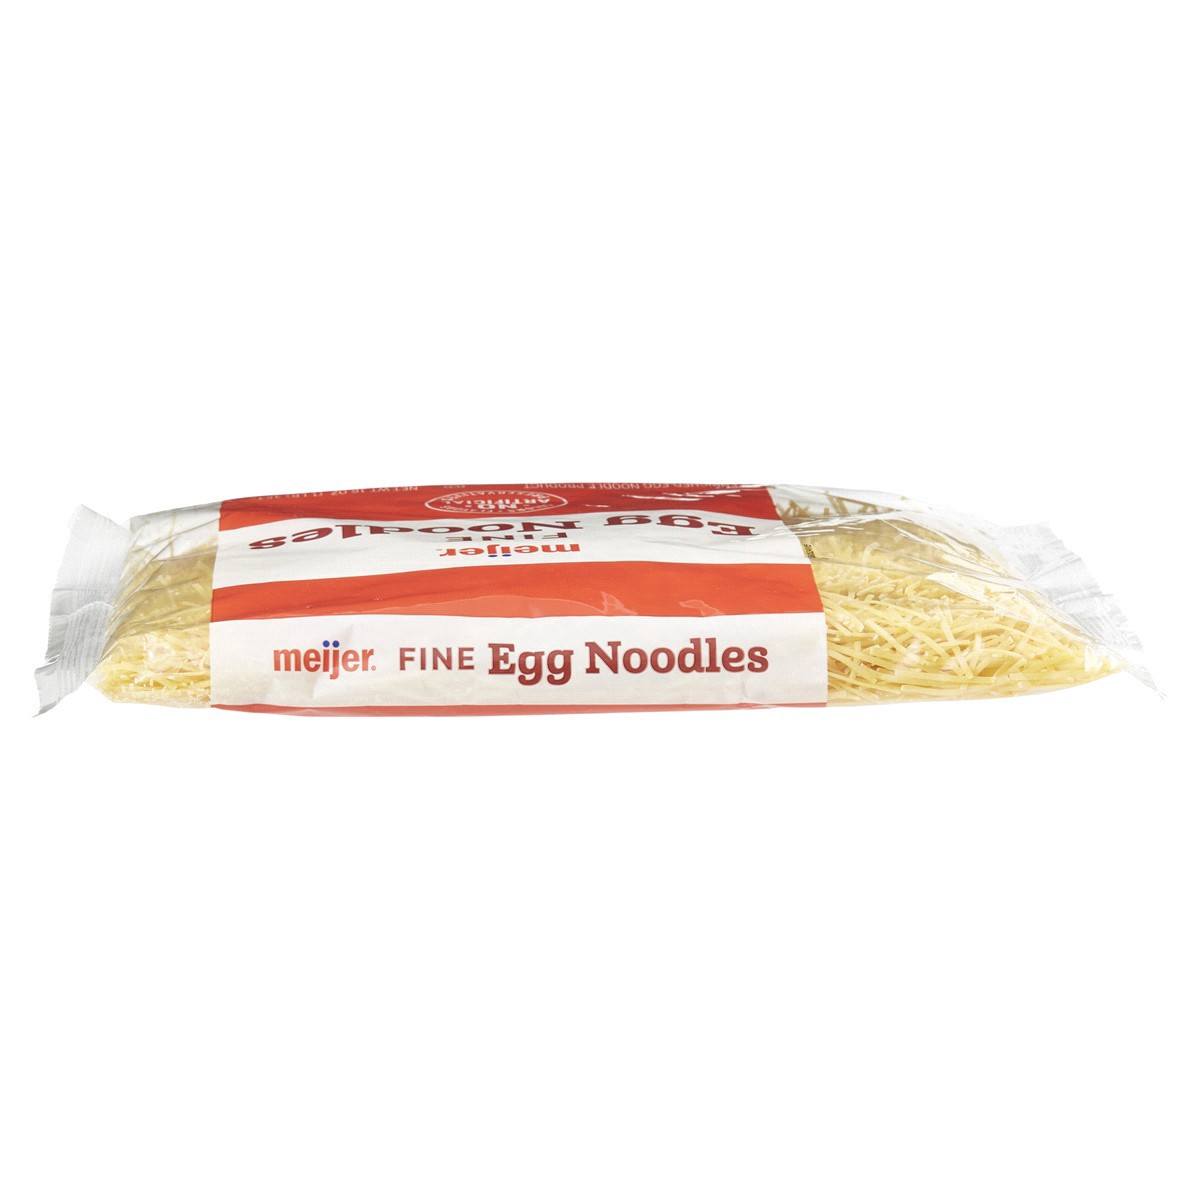 slide 17 of 29, Meijer Fine Egg Noodles, 16 oz